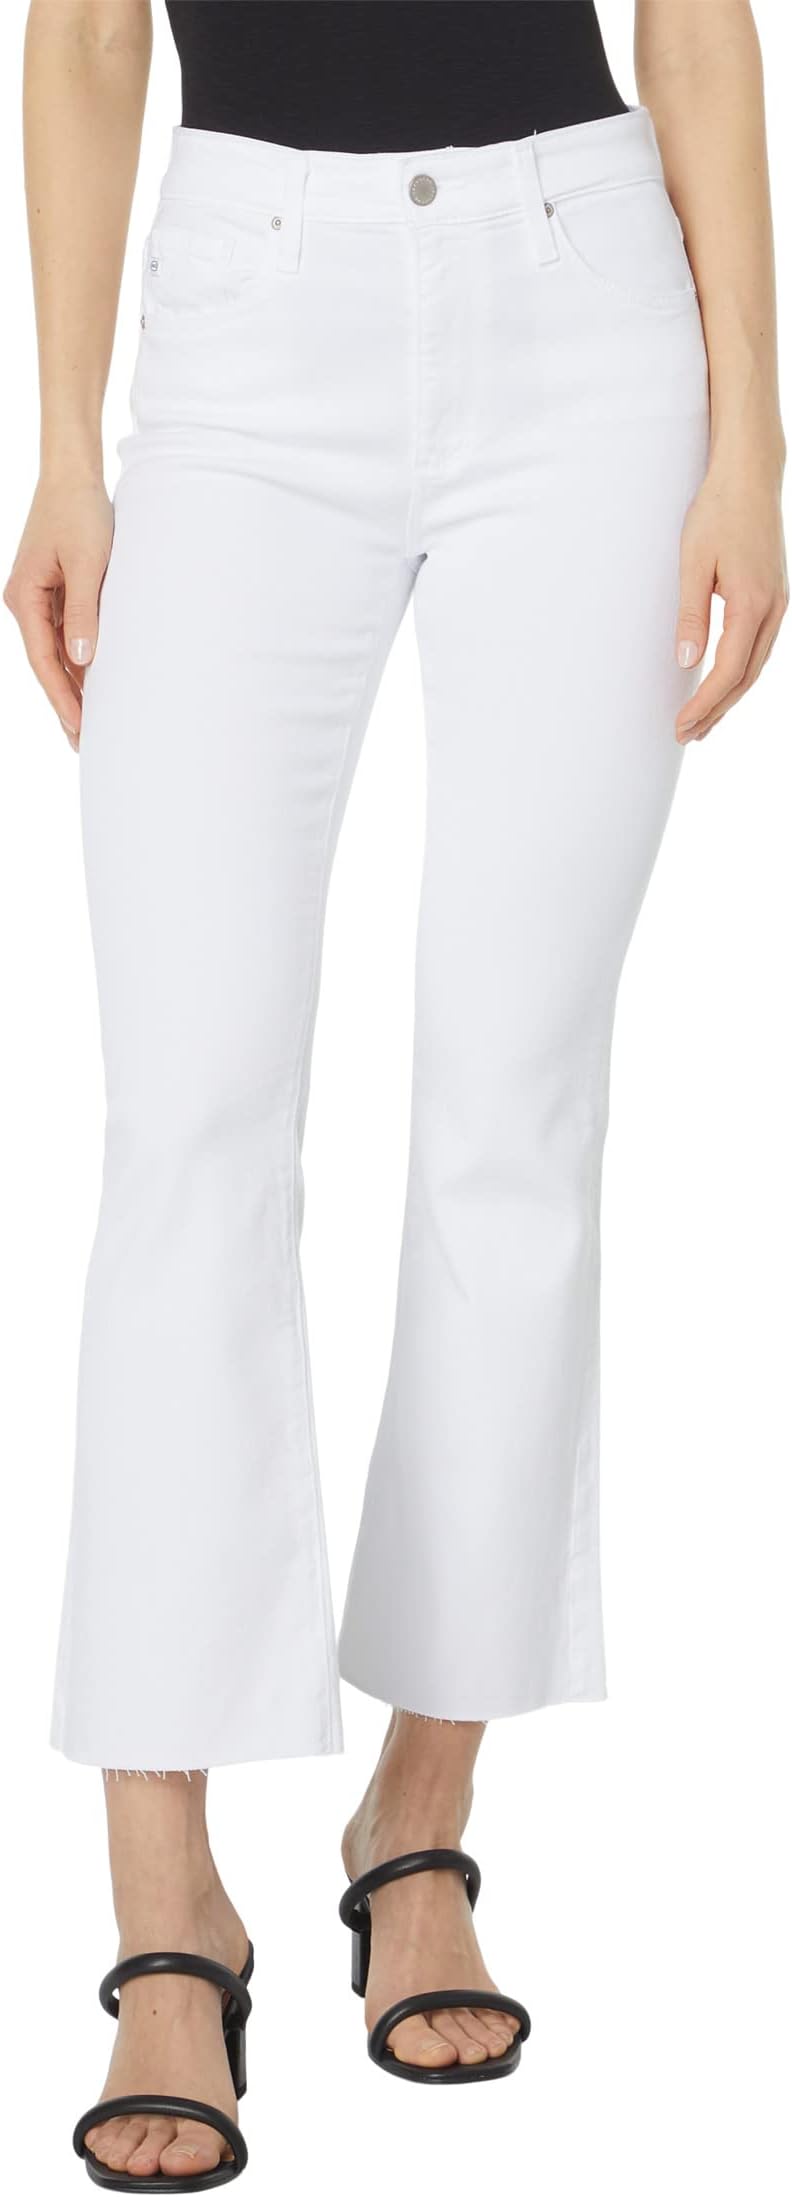 Джинсы Farrah Boot Crop High-Rise Fit in Modern White AG Jeans, цвет Modern White